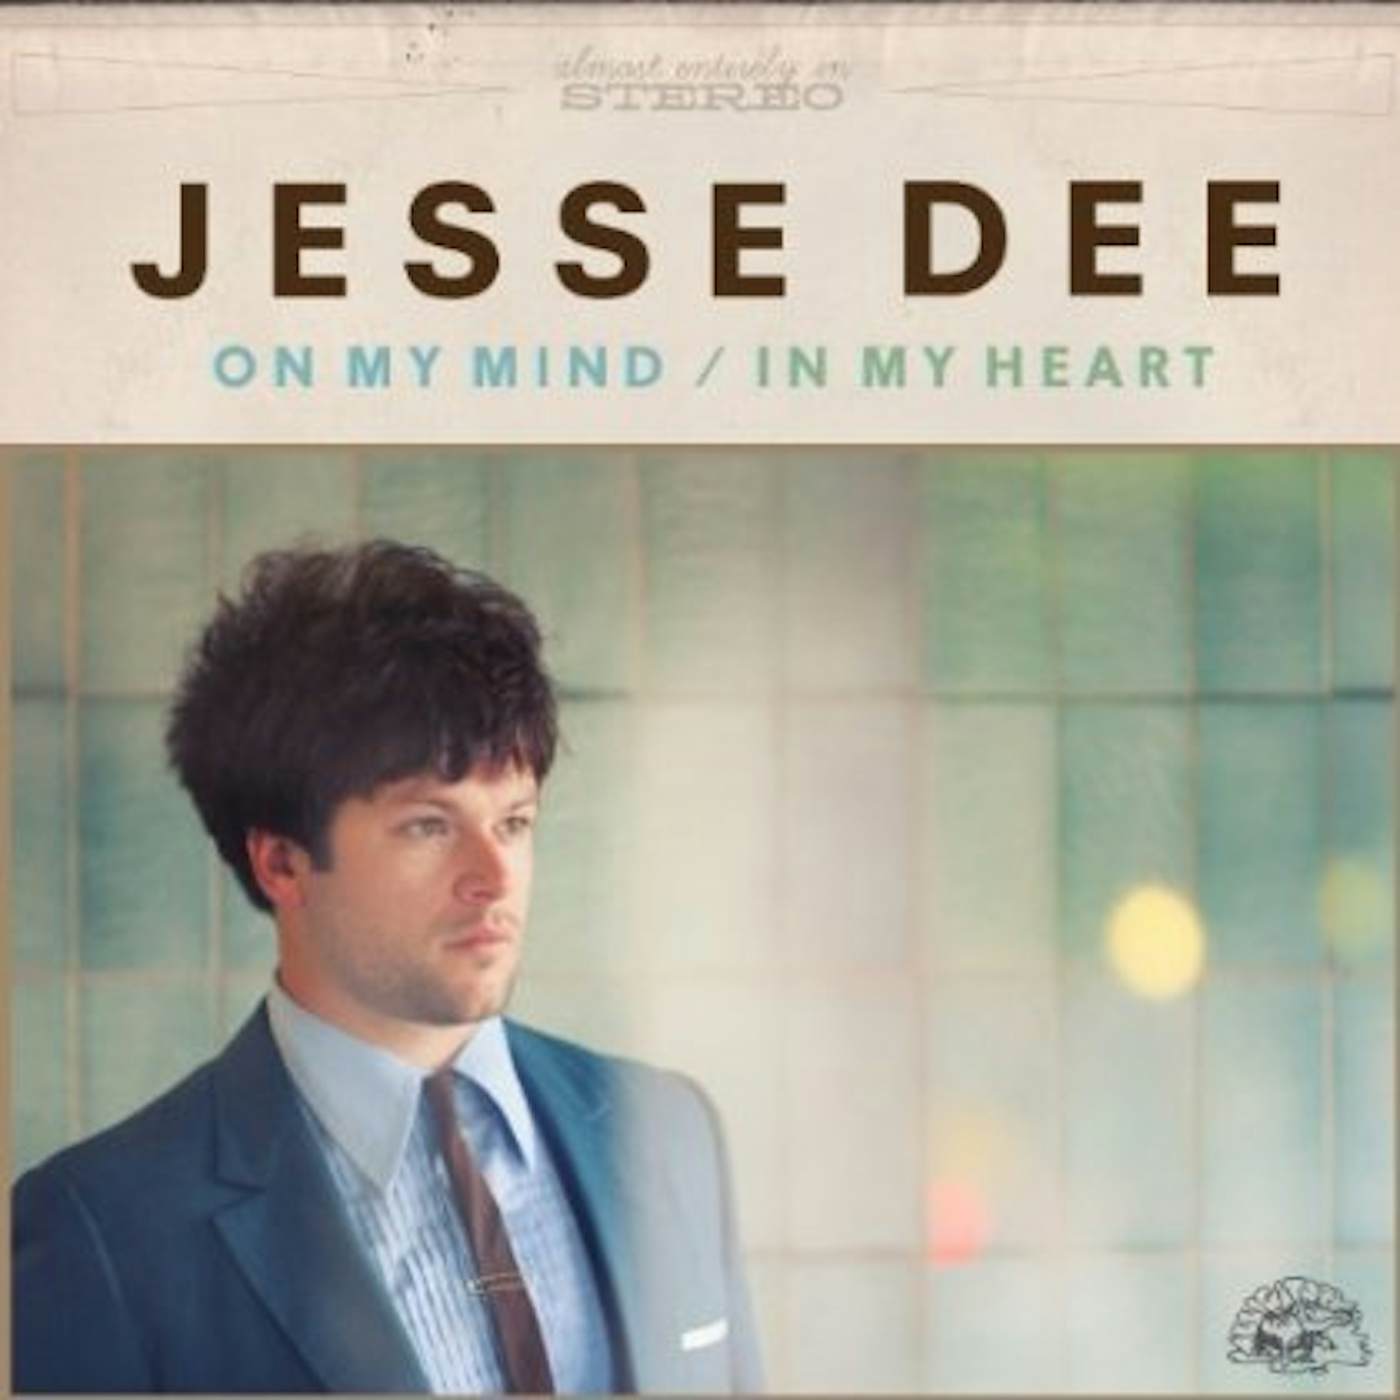 Jesse Dee ON MY MIND / IN MY HEART CD